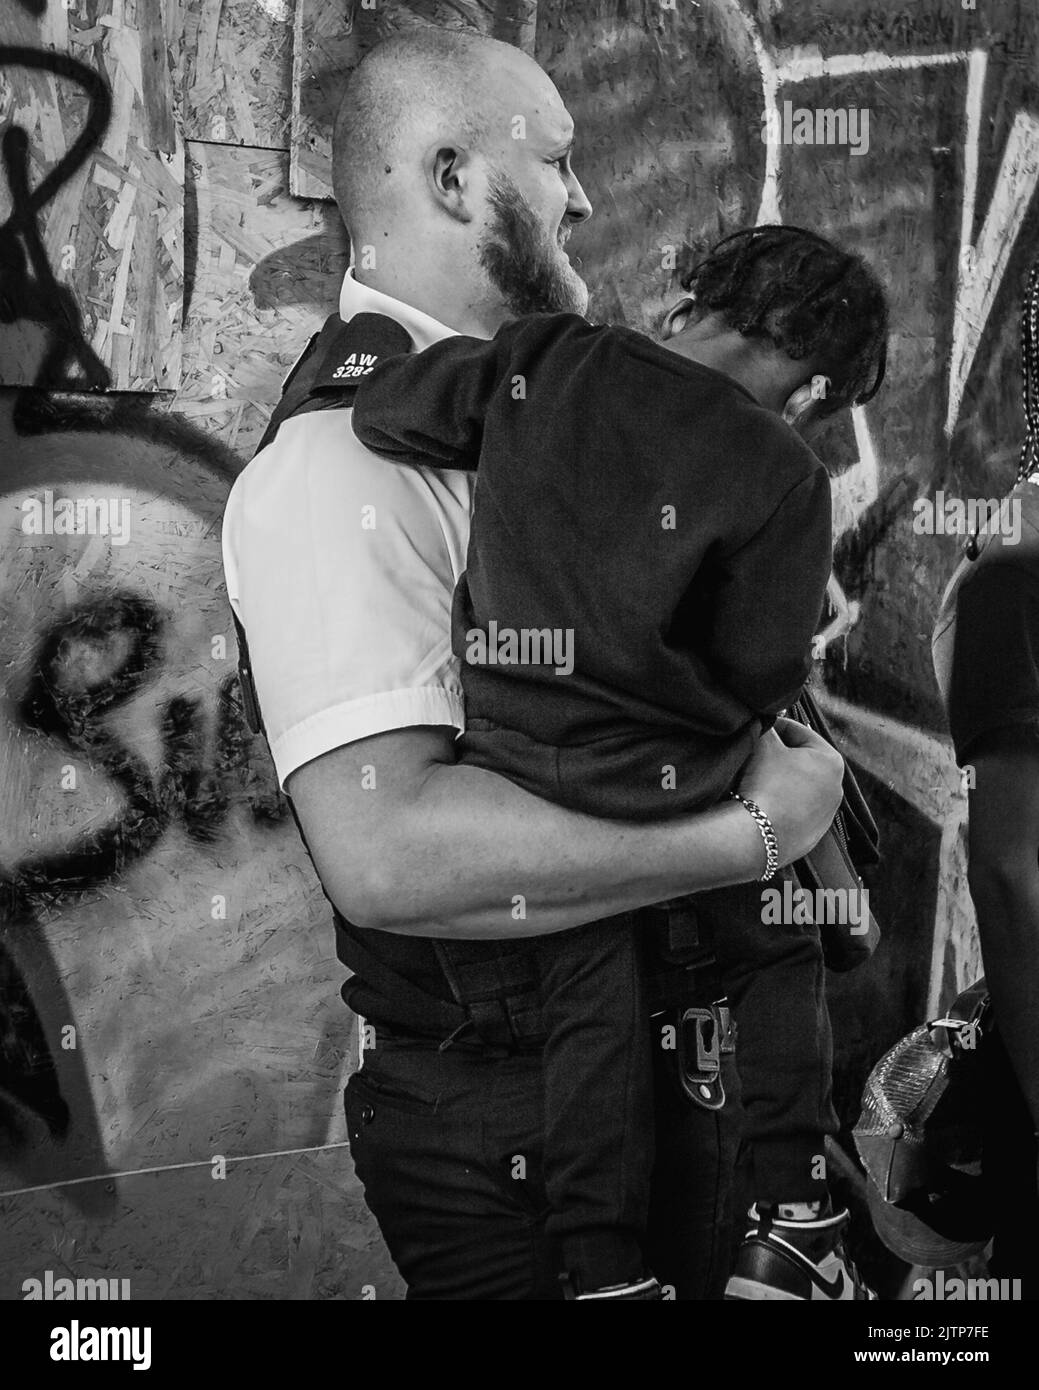 Ein schwarz-weißes Bild des Polizisten, der ein kleines Kind tröstet, das seine Eltern beim Notting Hill Carnival verloren hat. Stockfoto